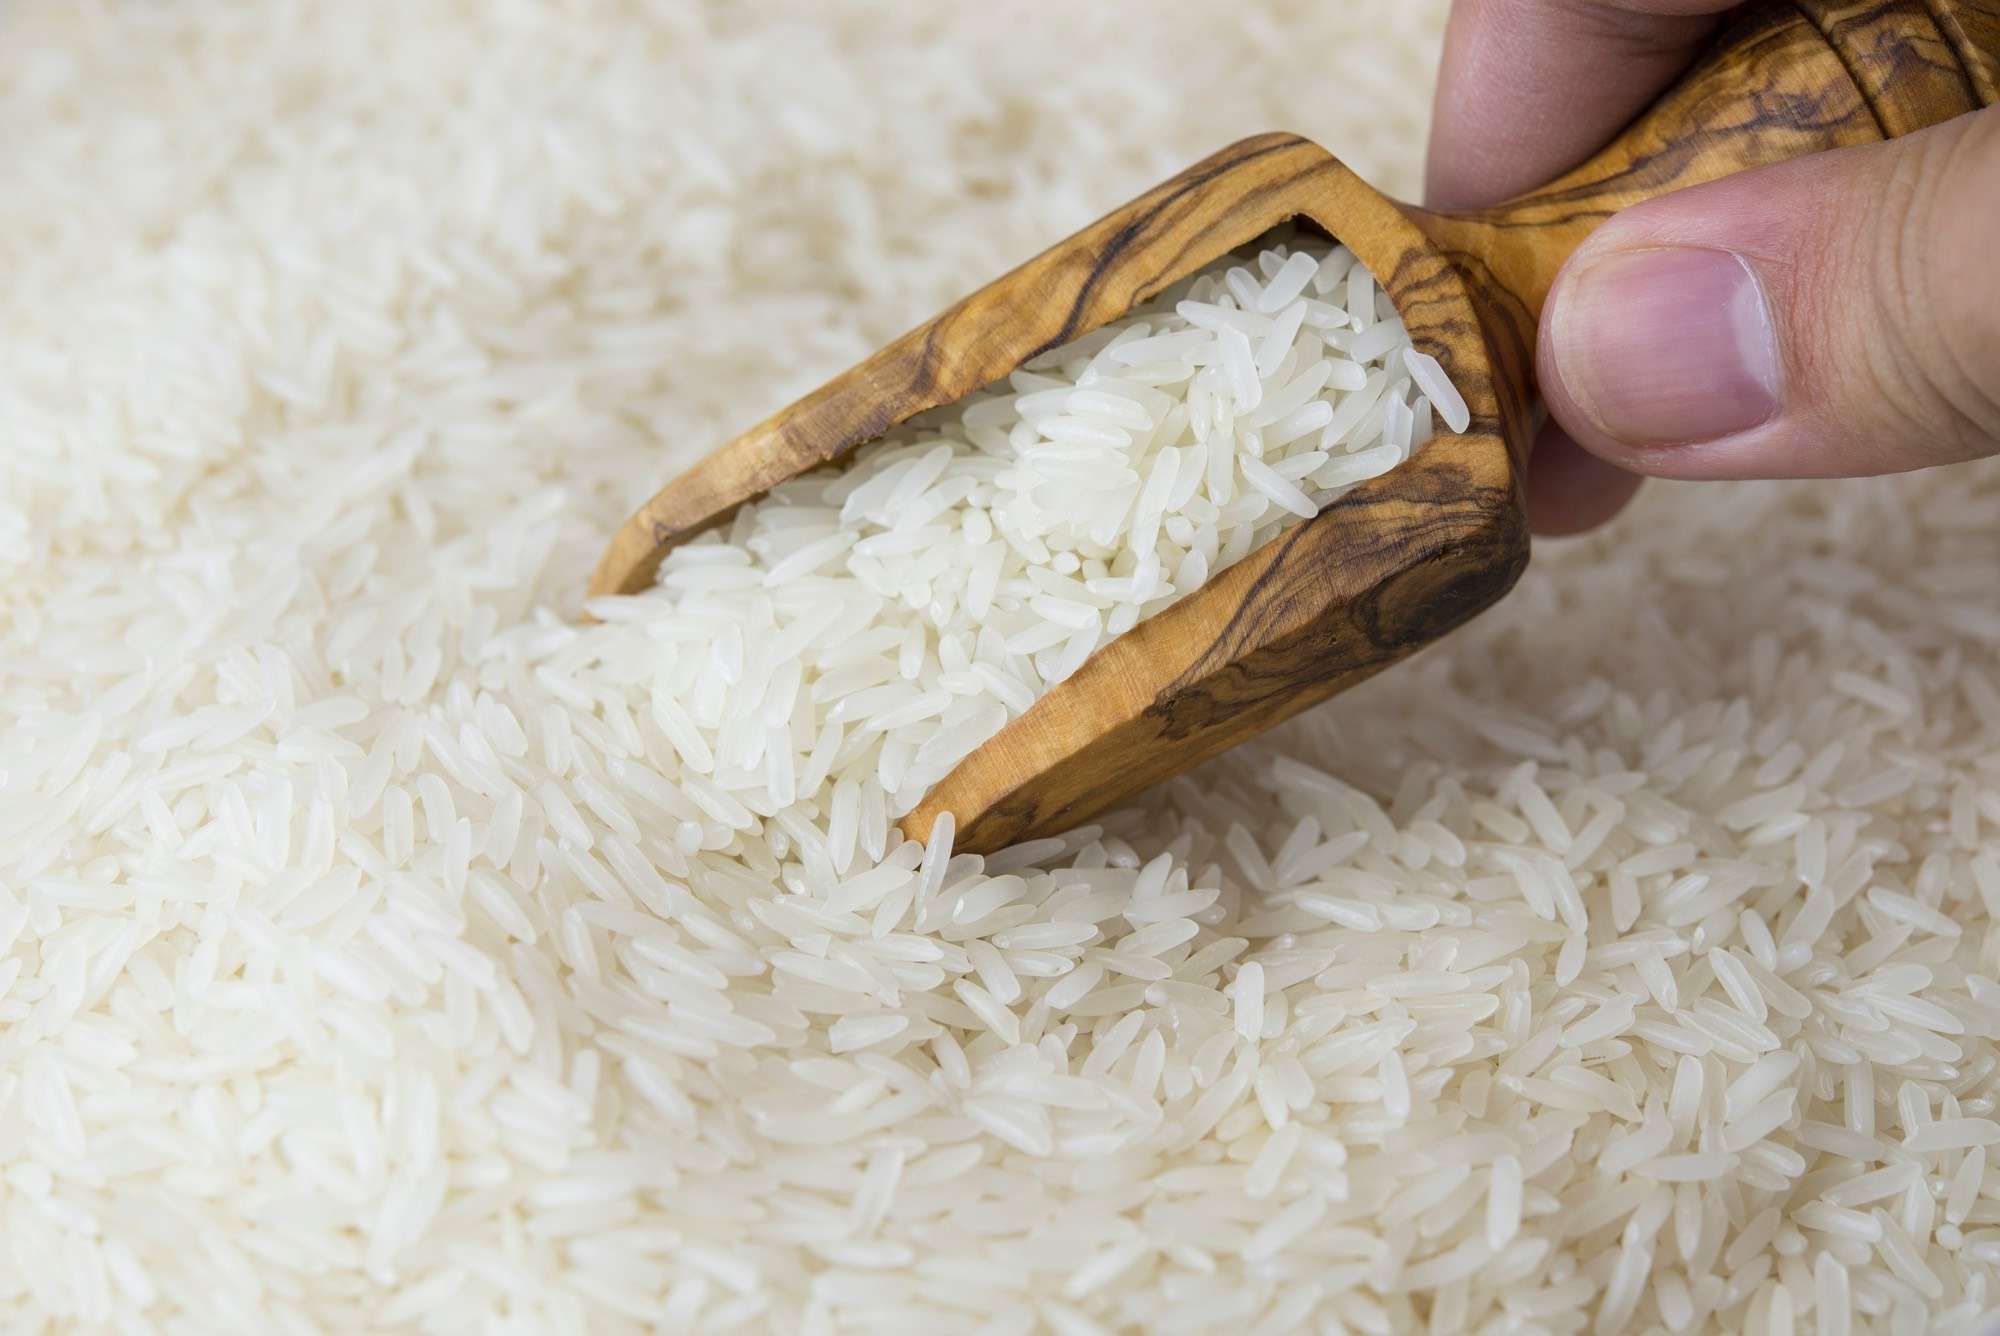 تجار يتوقعون انفراجة في الأرز بعد إلغاء قرار التسعير بـ18 جنيهاً وتوقعات بزيادة المعروض بالسوق المصري